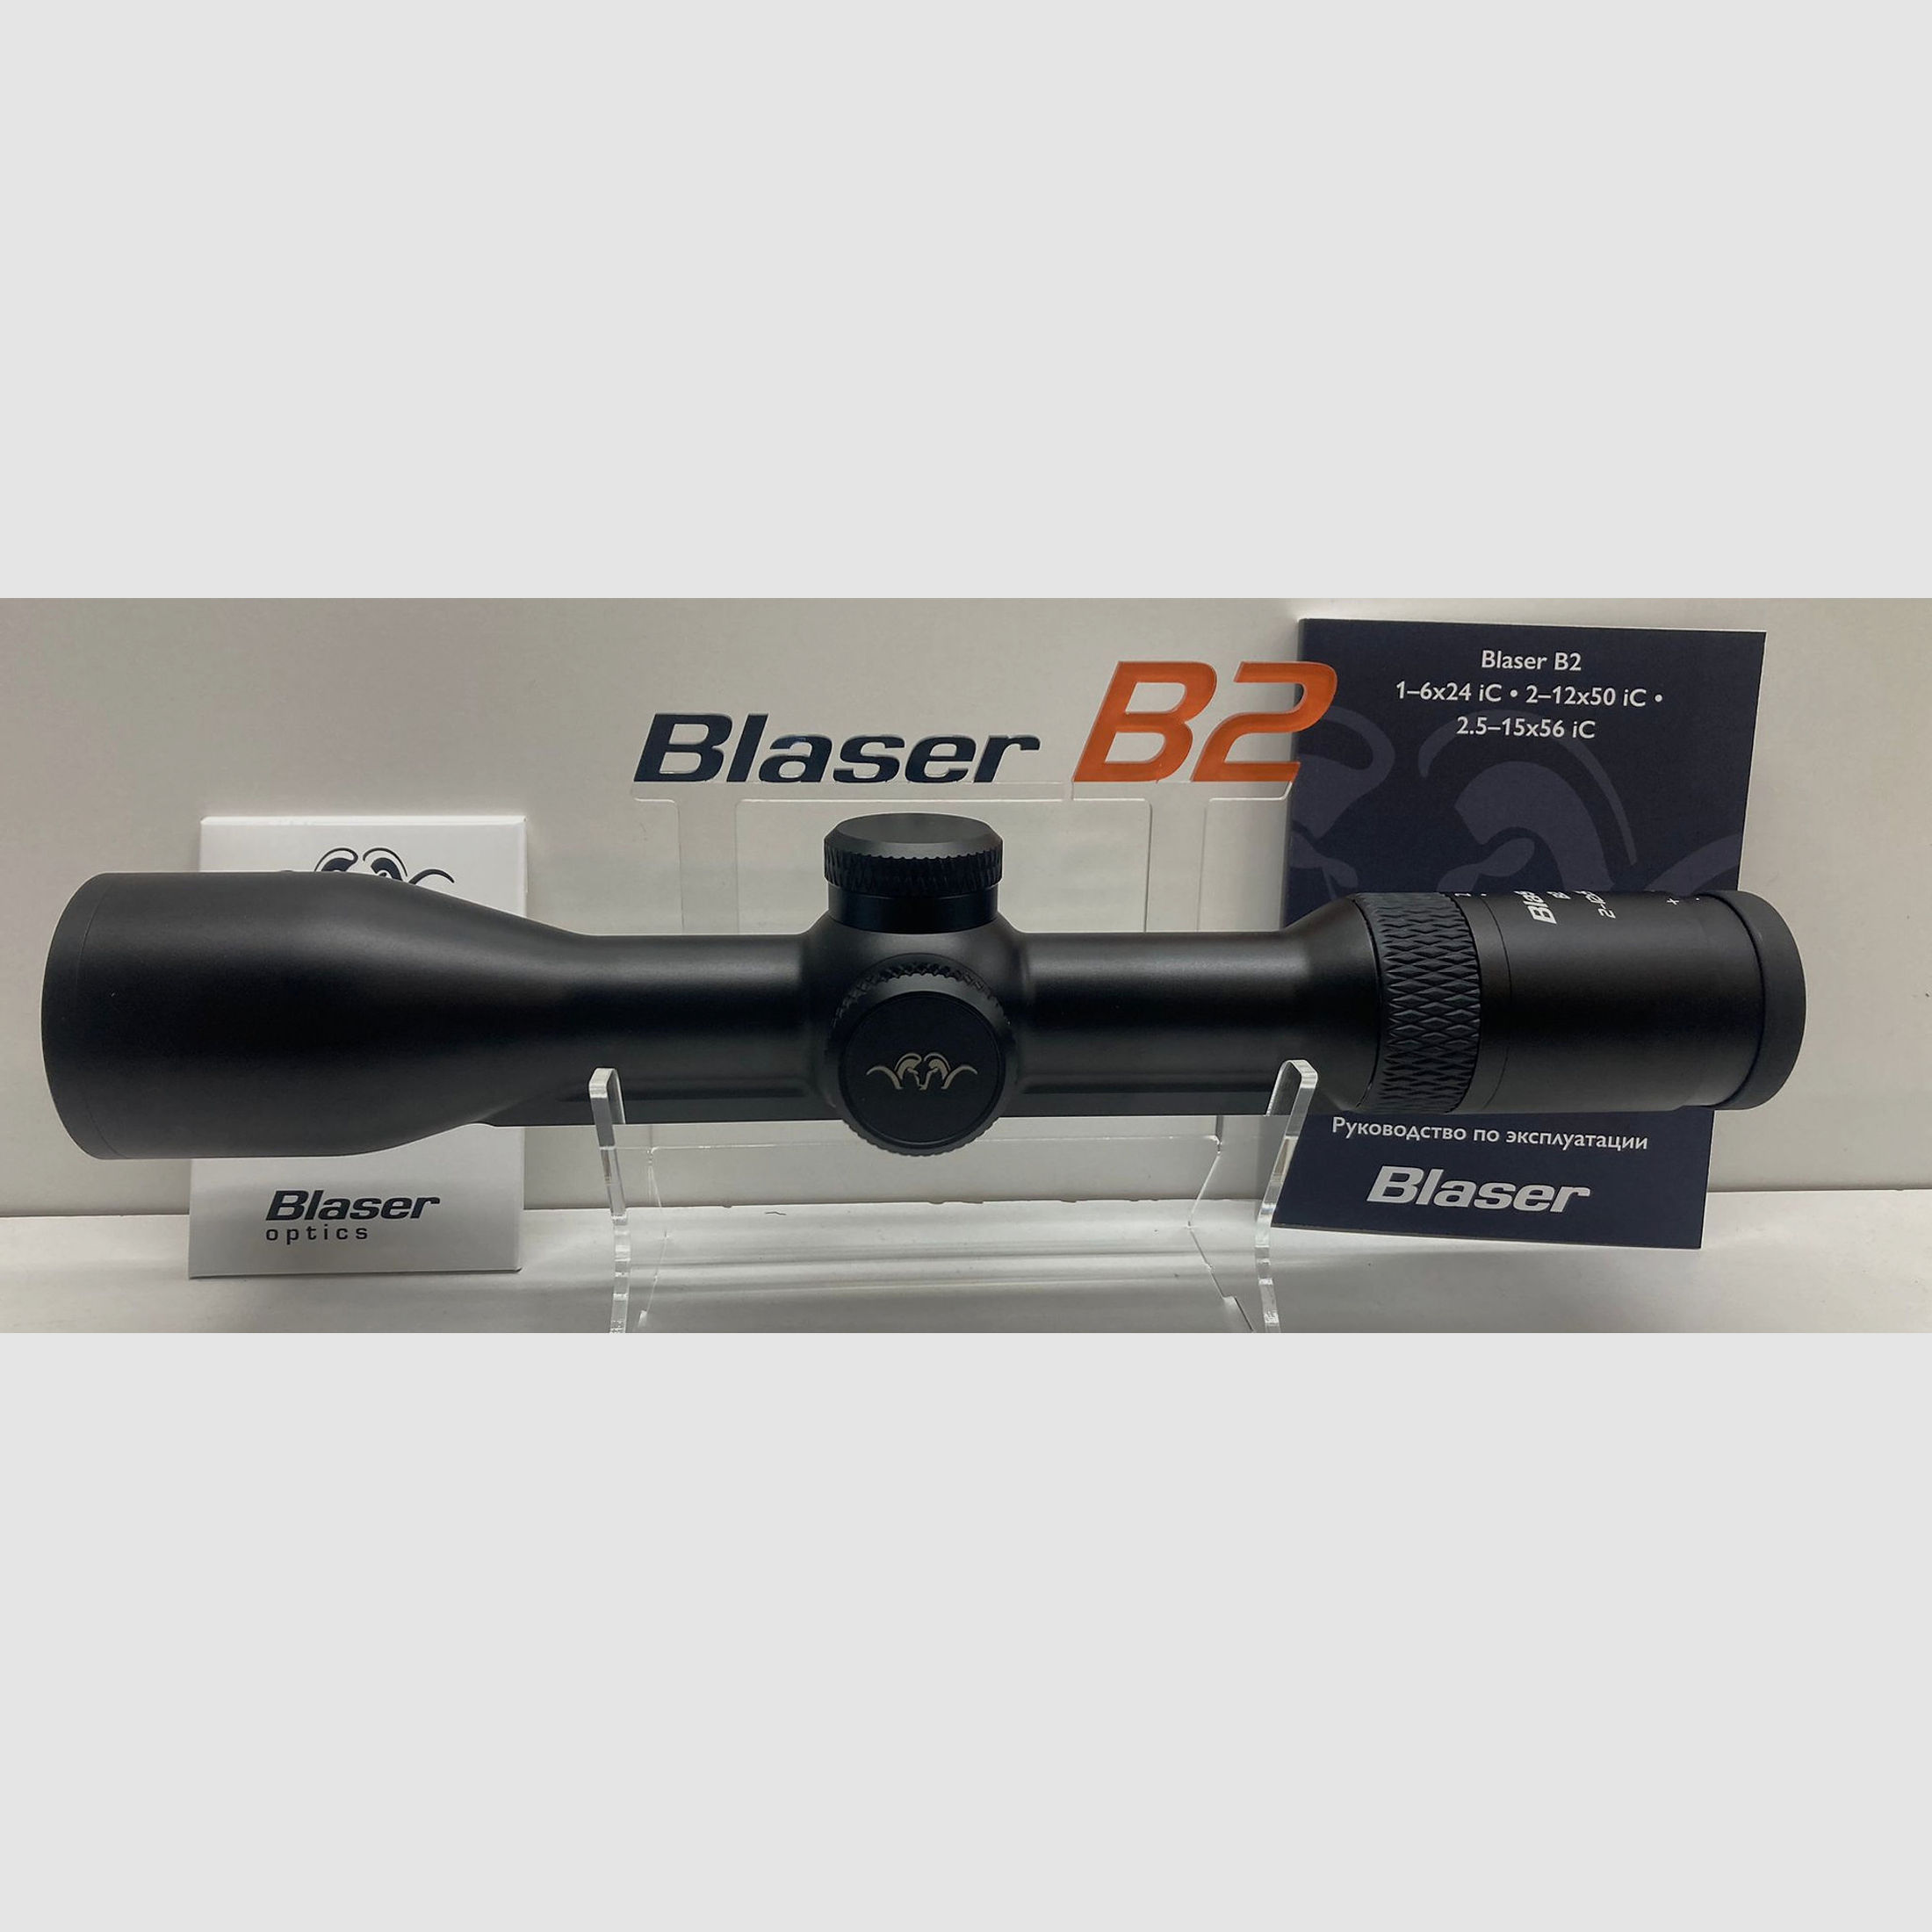 Blaser B2 | 2-12x50 iC S Zielfernrohr